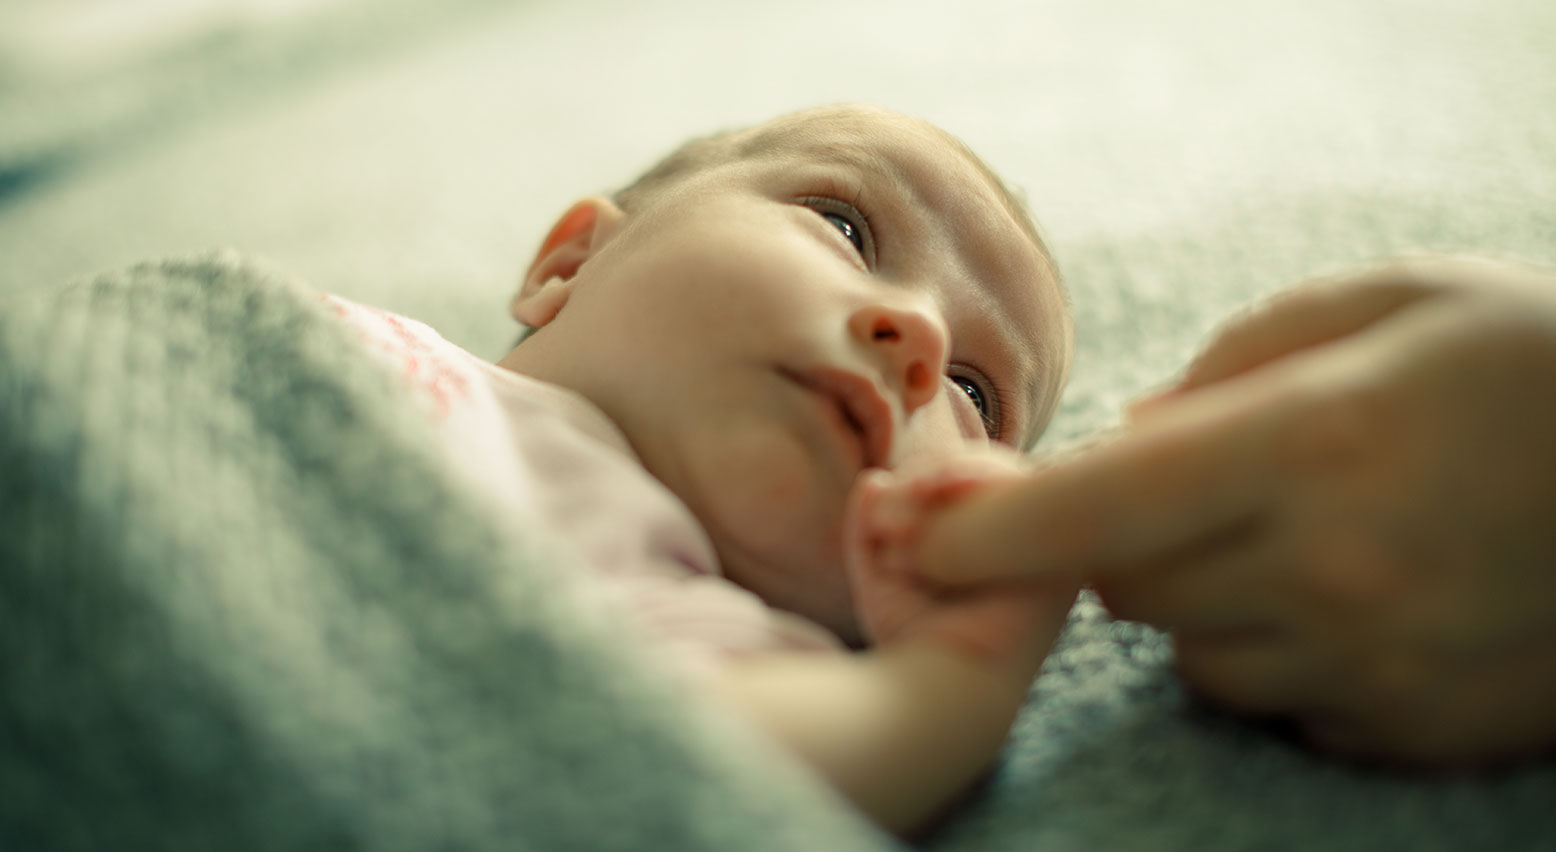 Ein Neugeborenes umfasst mit seinem Händchen den Finger einer Erwachsenen.